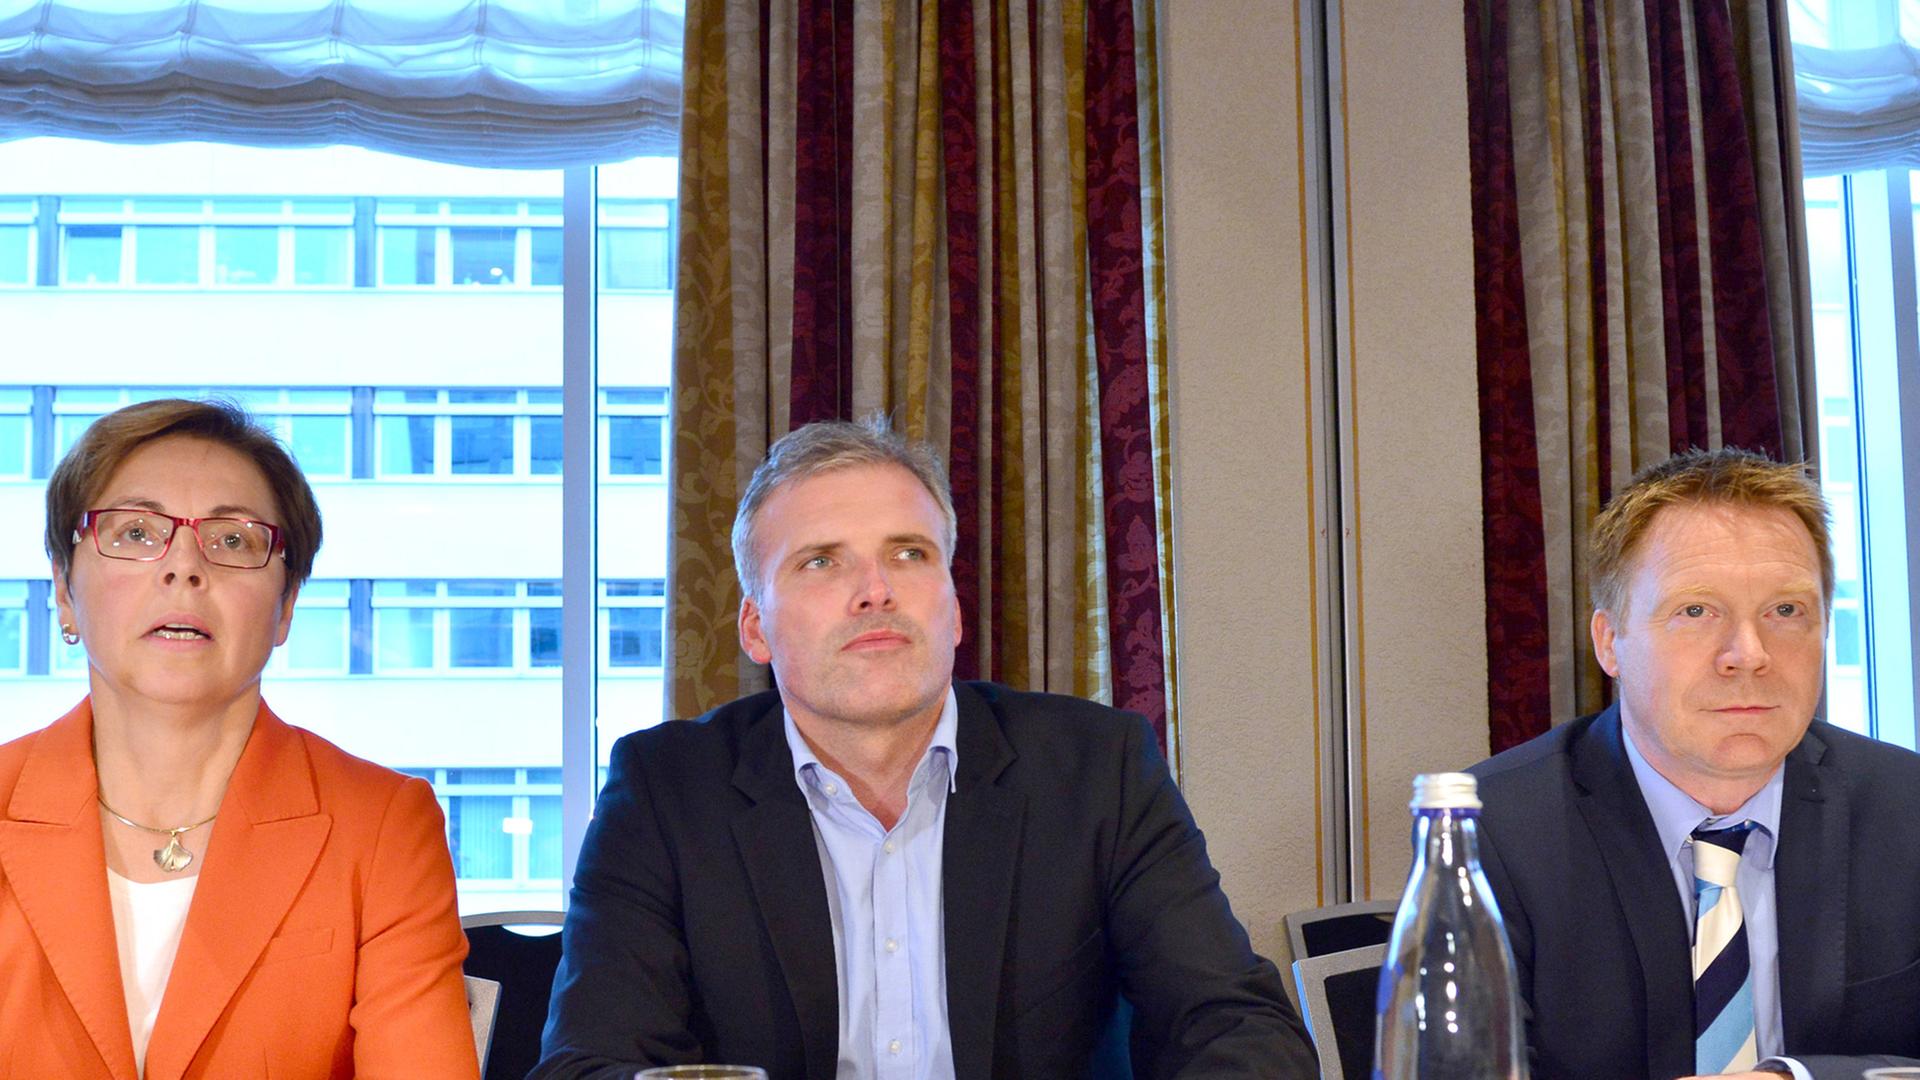 Heike Taubert, Andreas Bausewein und Christoph Matschie sitzen an einem Tisch bei einer Parteisitzung.